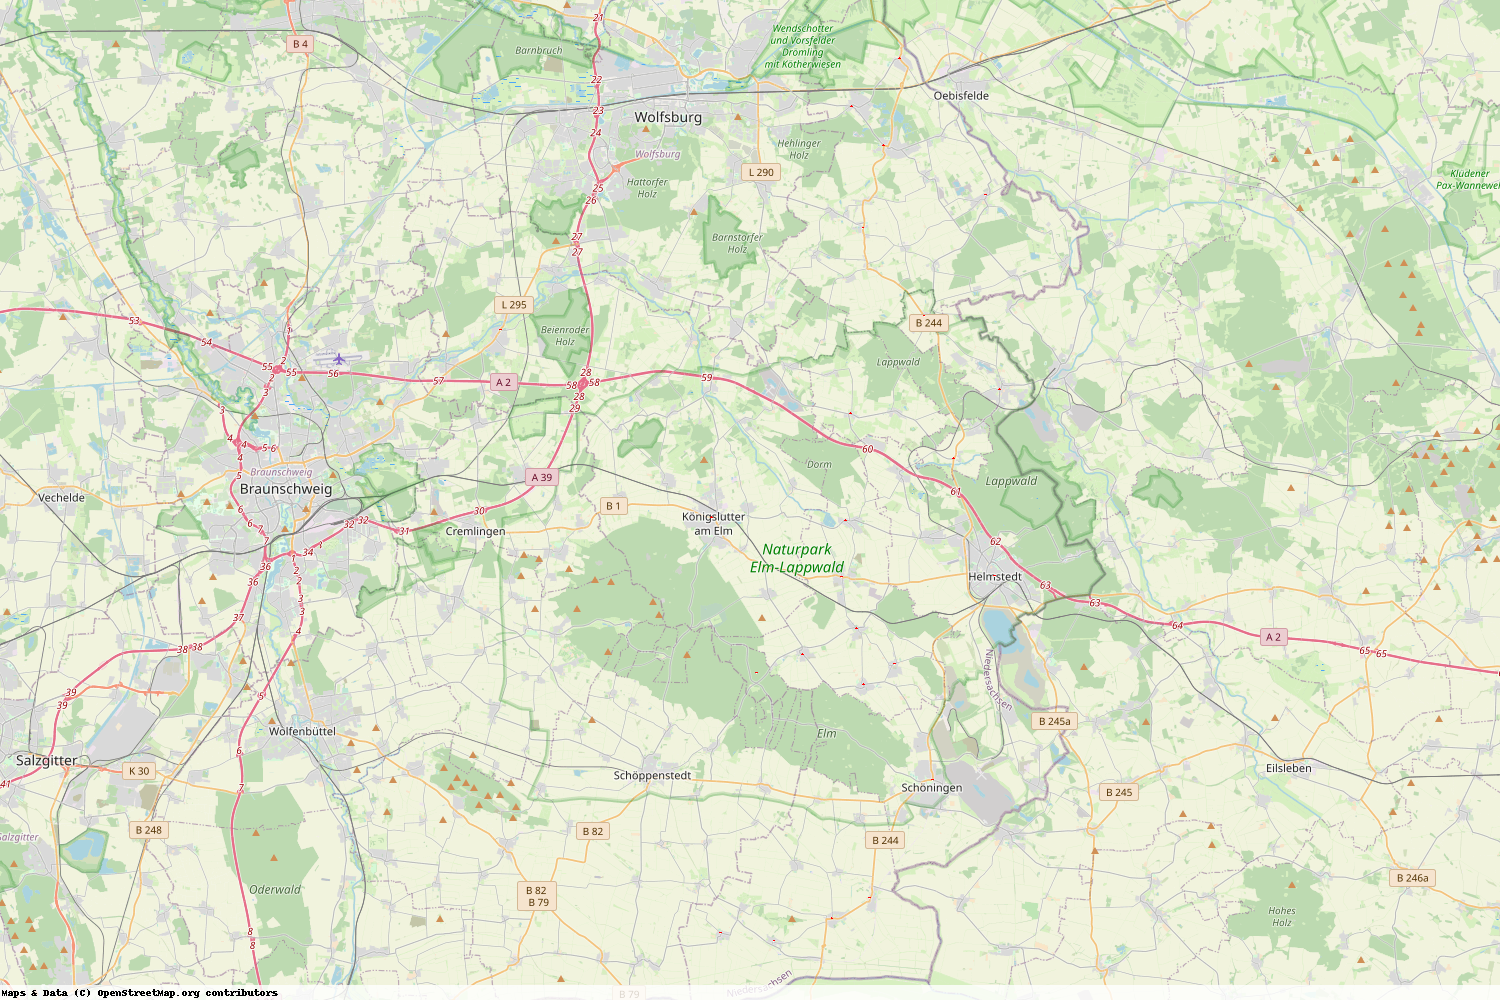 Ist gerade Stromausfall in Niedersachsen - Helmstedt?